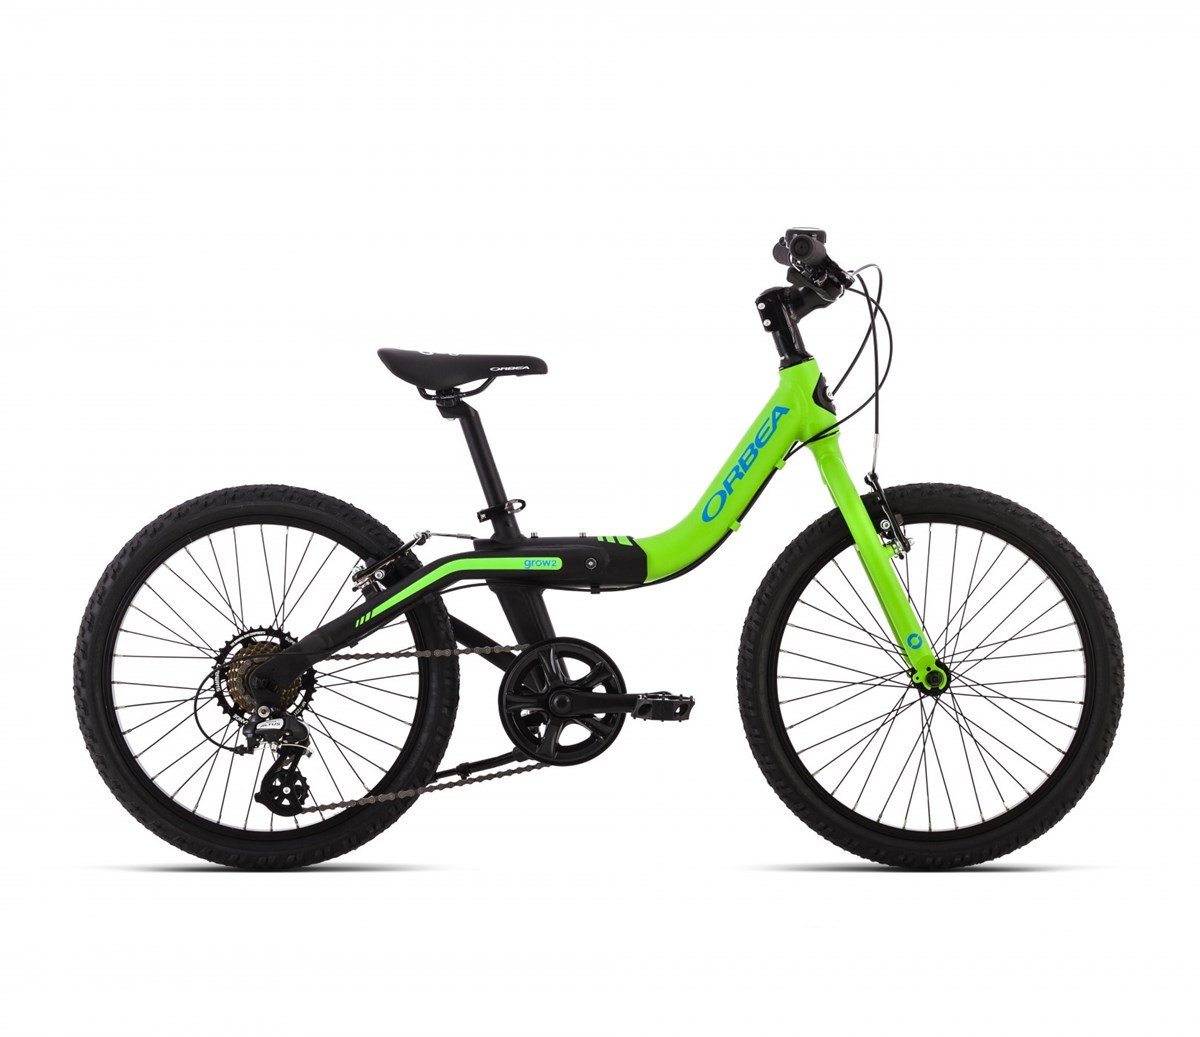 Orbea Grow 2 7V 20w 2016 - Kids Bike product image